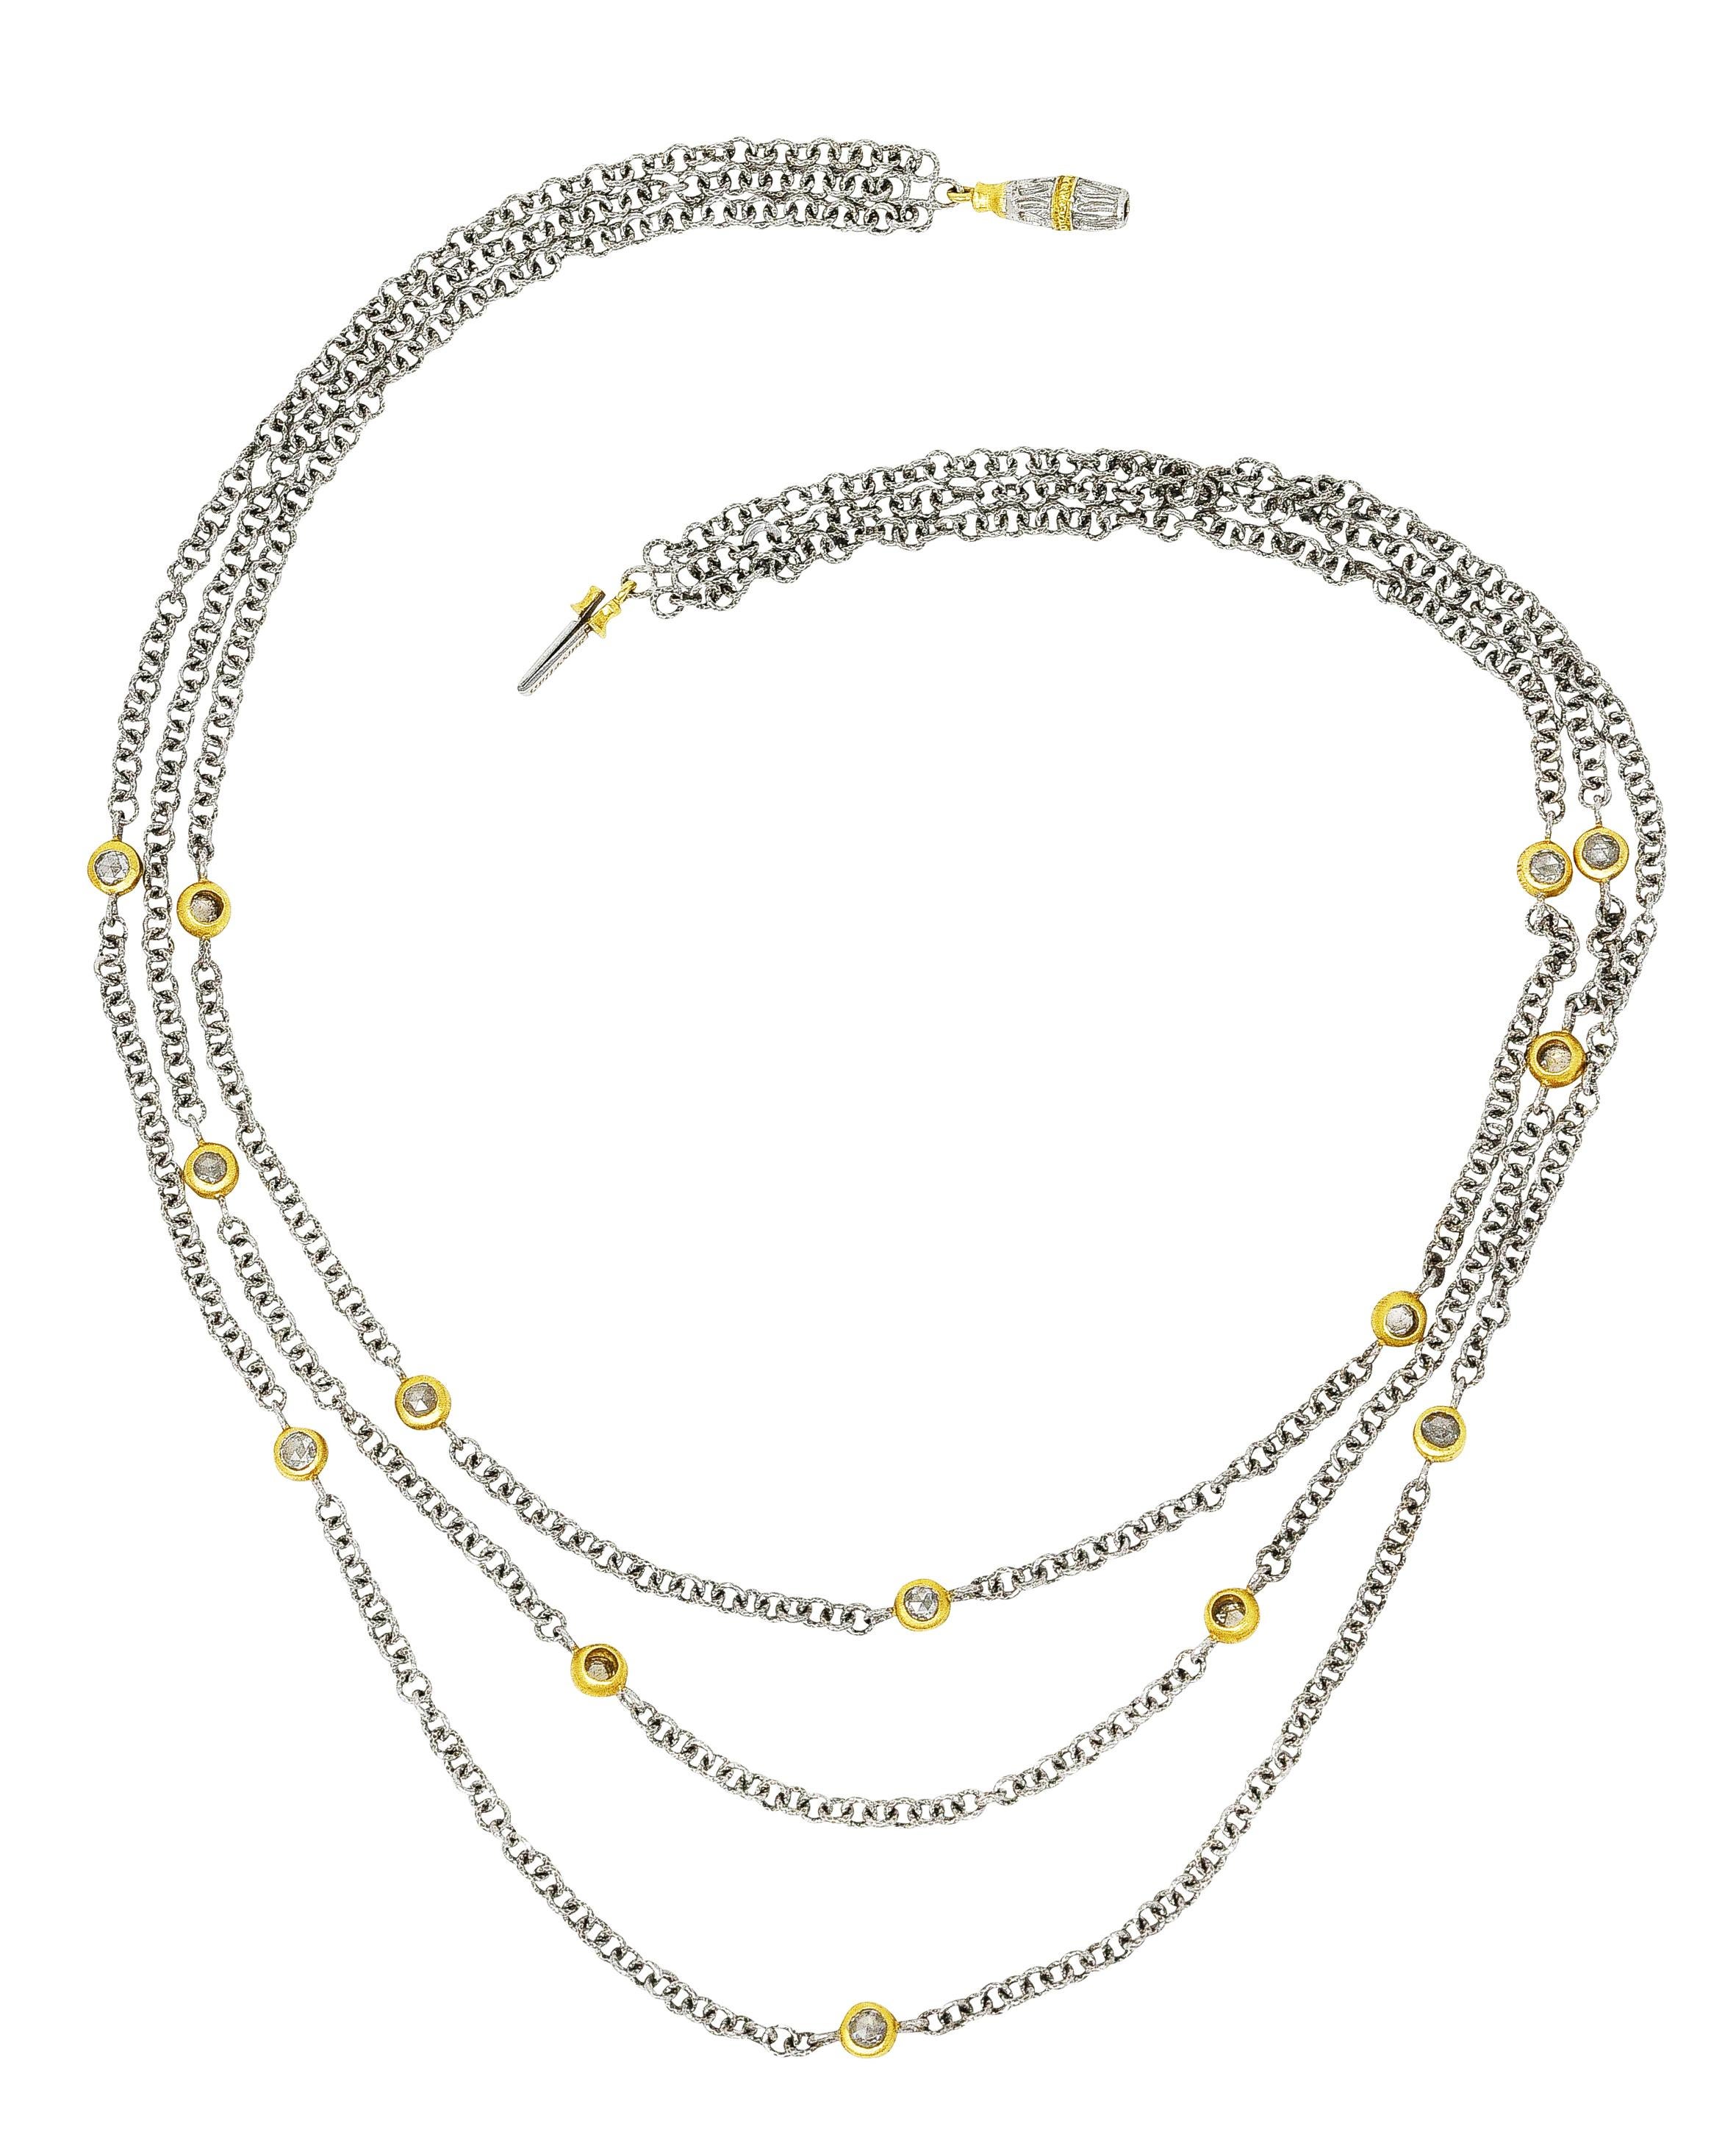 Die mehrreihige Halskette besteht aus drei geflochtenen Weißgoldketten mit strukturierten runden Gliedern. Intermittierende Stationen aus Gelbgold, besetzt mit Diamanten im Rosenschliff. Das Gesamtgewicht beträgt etwa 0,50 Karat - die Qualität